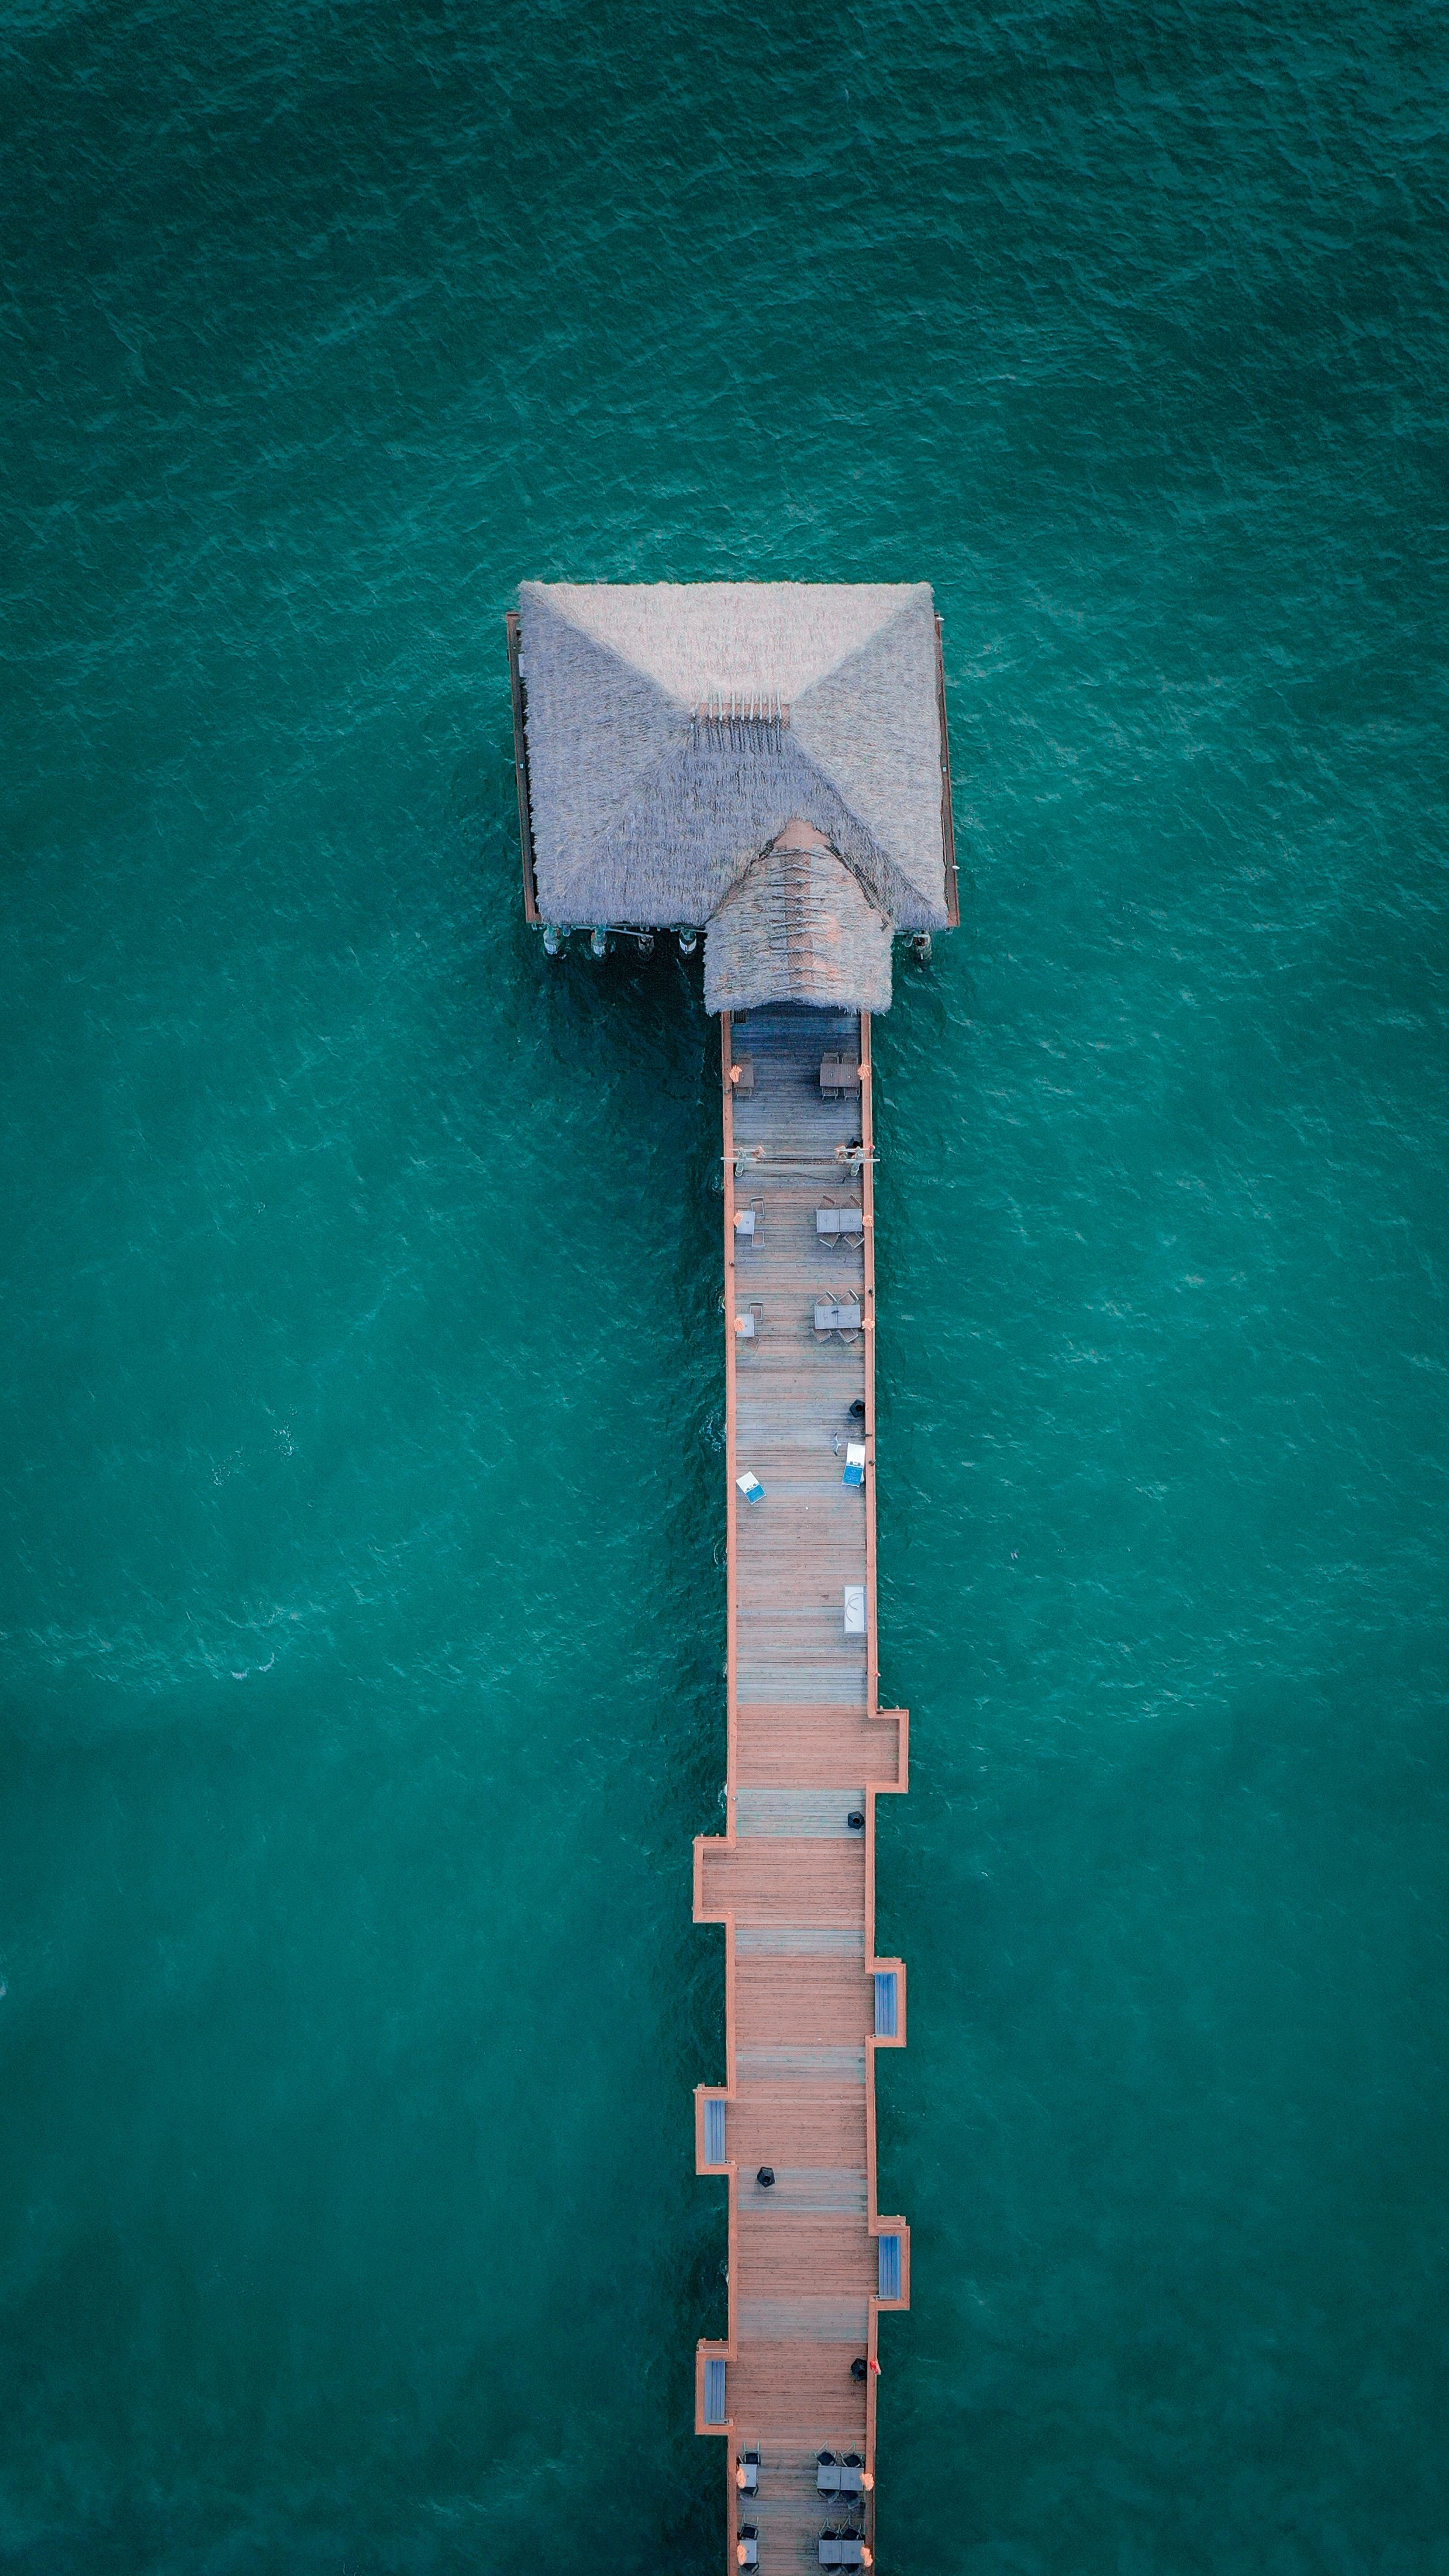 An aerial view of Cocoa beach pier extending into the ocean, Florida, USA